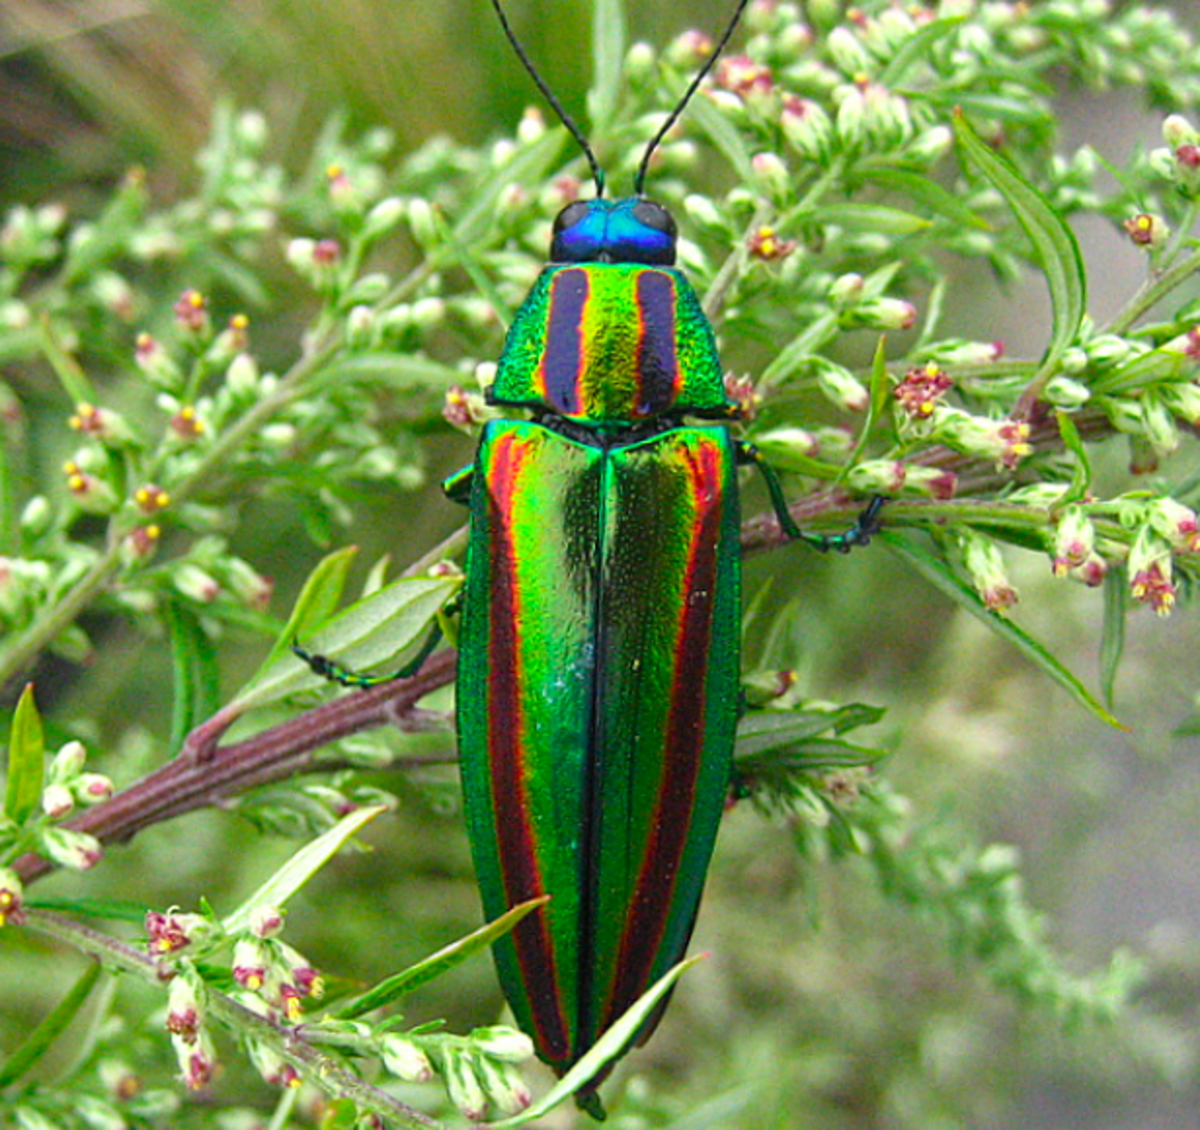 An amazing jewel beetle